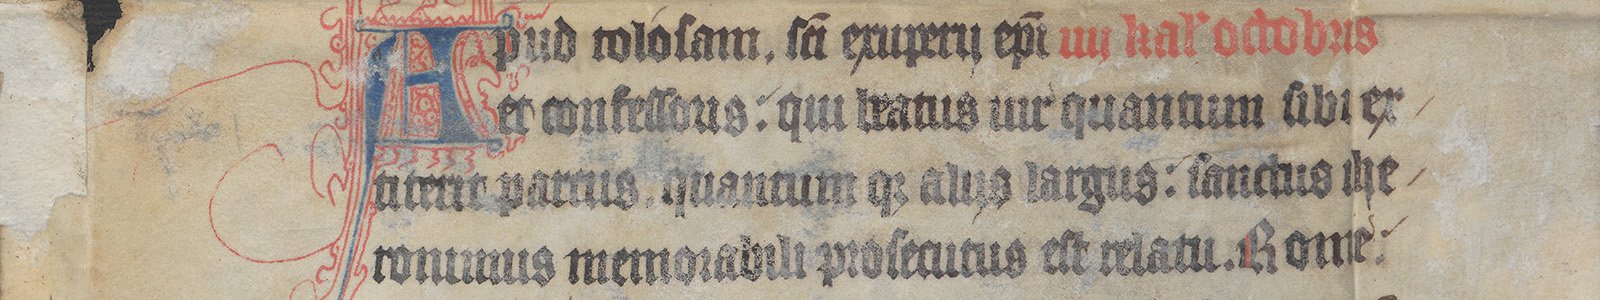 Uitsnede uit handschrift fr. 7.23v uit de Bijzondere Collecties van de Universiteitsbibliotheek Utrecht